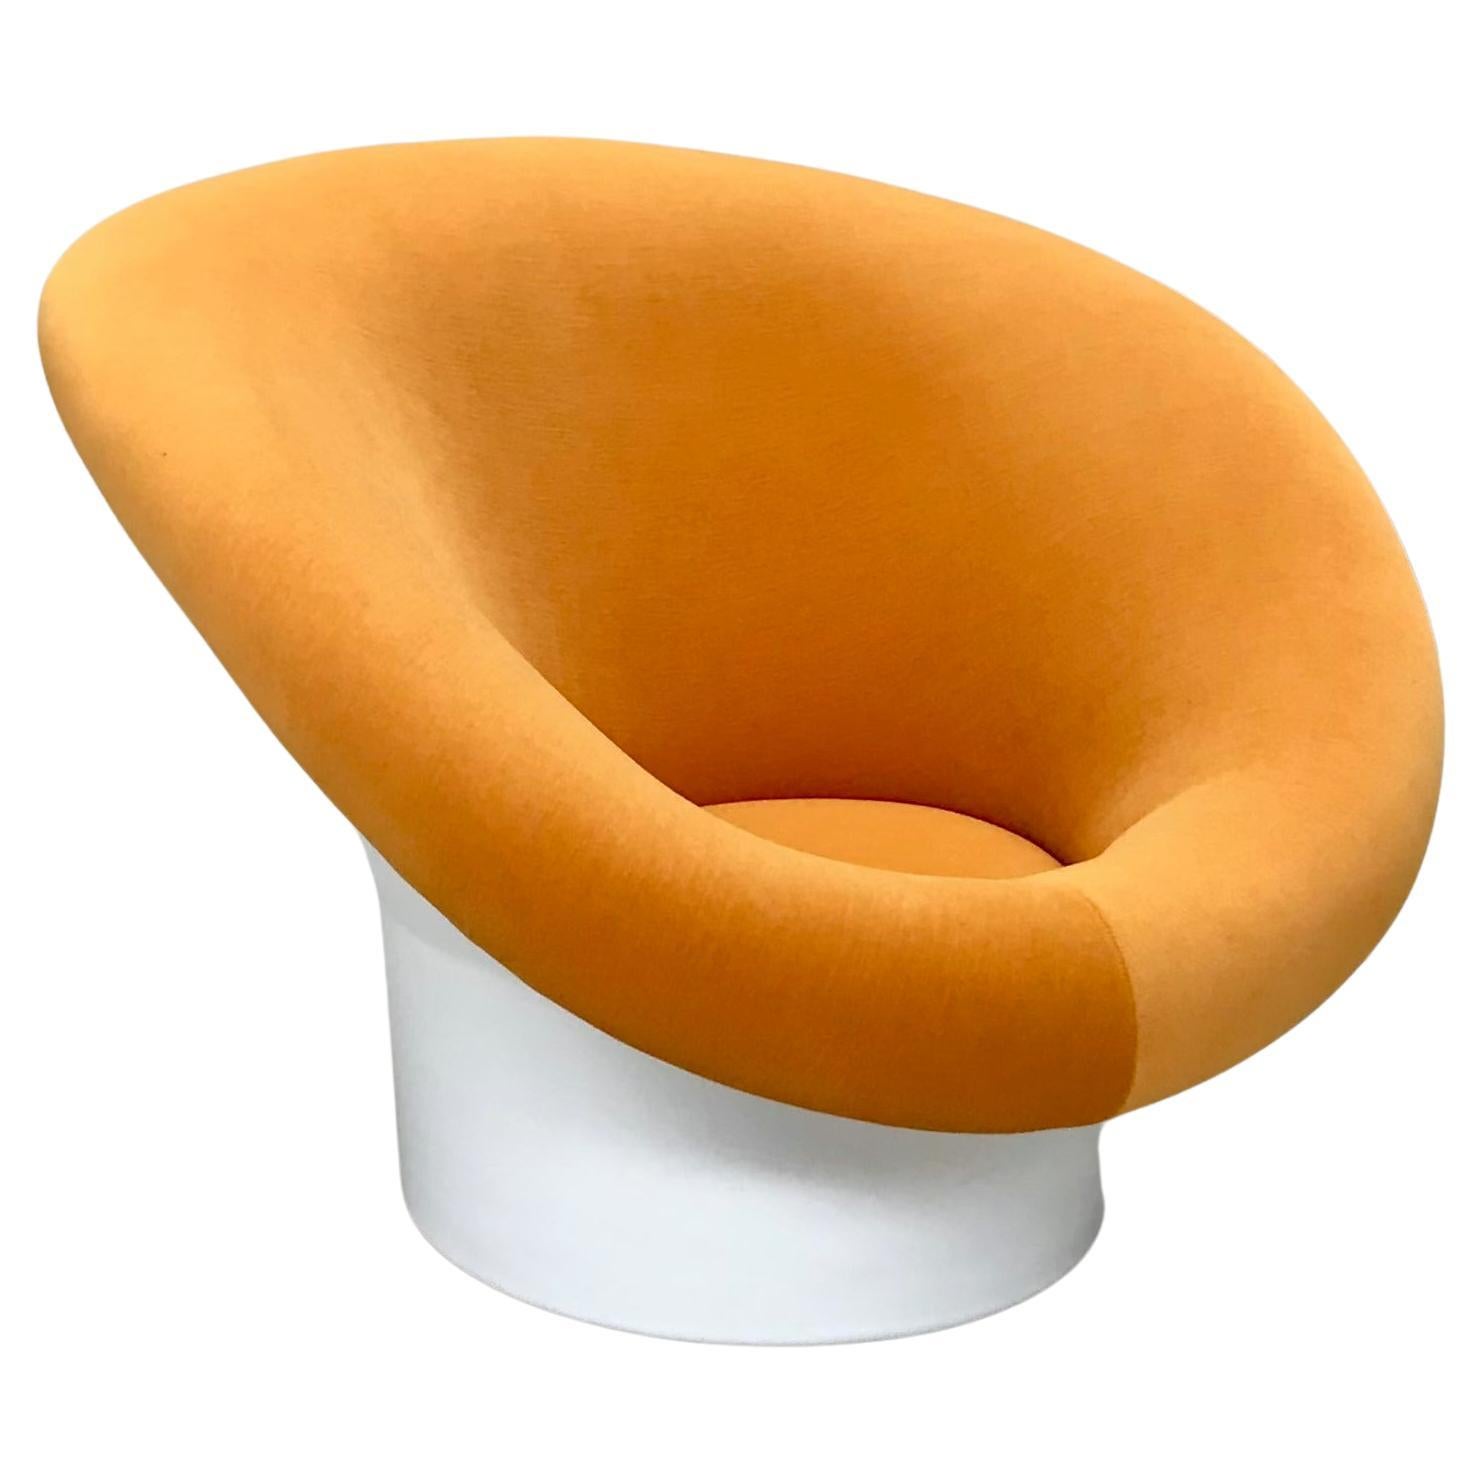 Magnifique fauteuil Krokus conçu par Lennart Bender pour Ulferts AB, Suède, dans les années 1960.
Super confortable et adorable avec sa célèbre forme de champignon.
Entièrement restauré et retapissé dans un tissu de velours Kvadrat.
Dimensions :